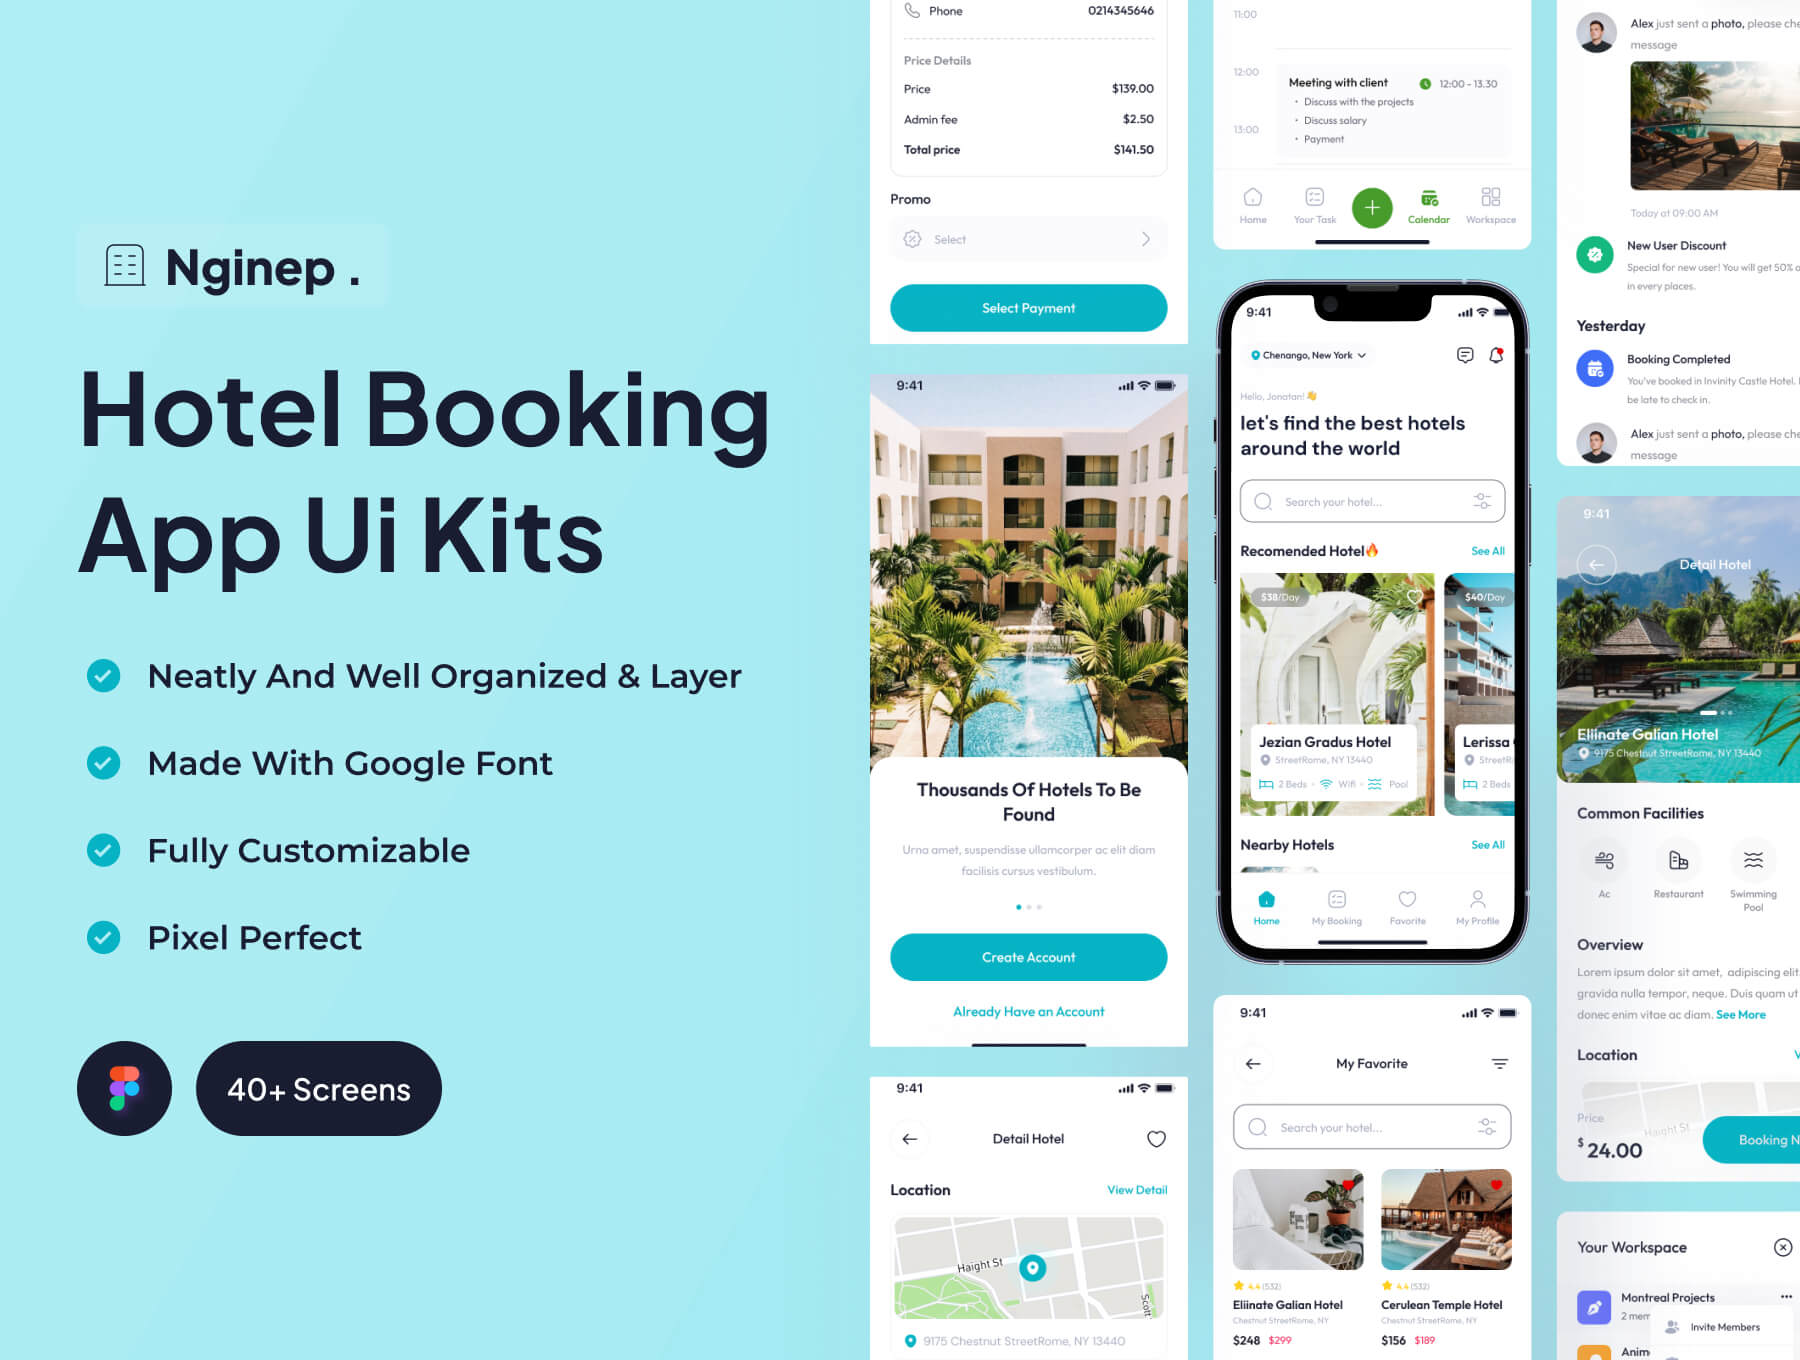 酒店预订应用UI套件旅游管理类Nginep – Hotel Booking App Ui Kits插图